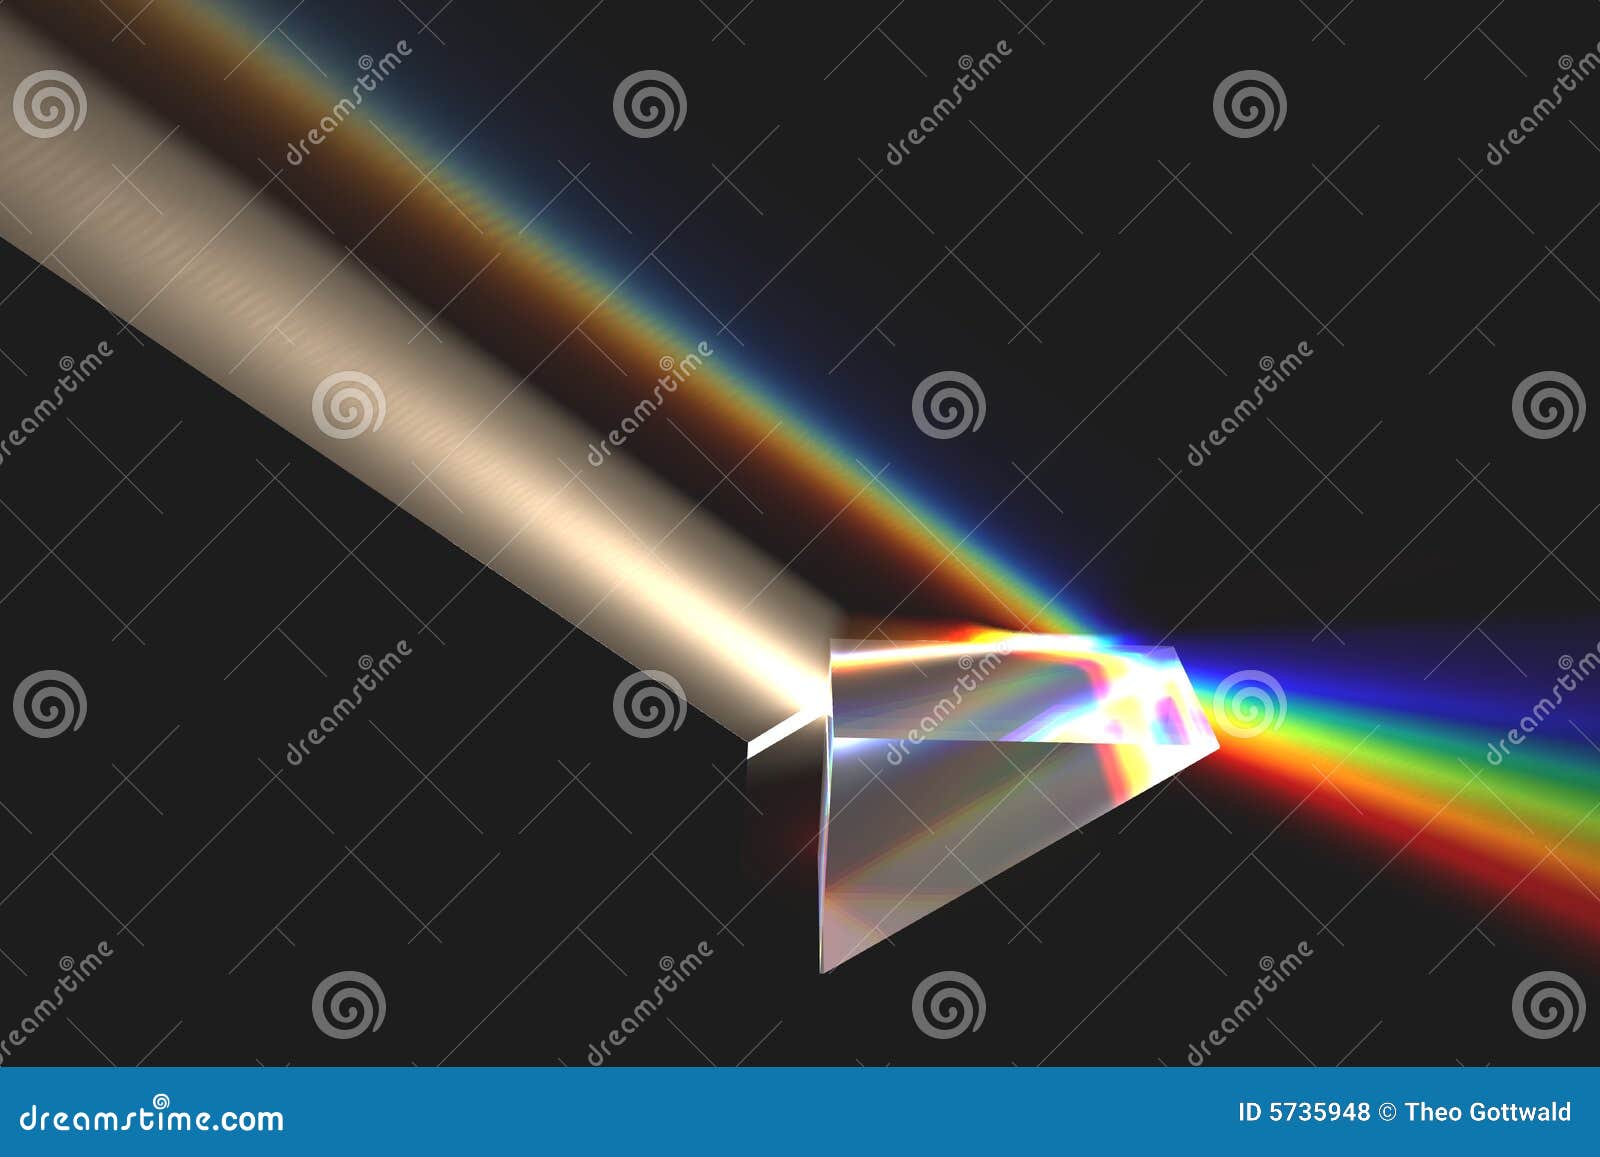 Prisme De Réfraction De La Lumière Arc-en-ciel Illustration Stock